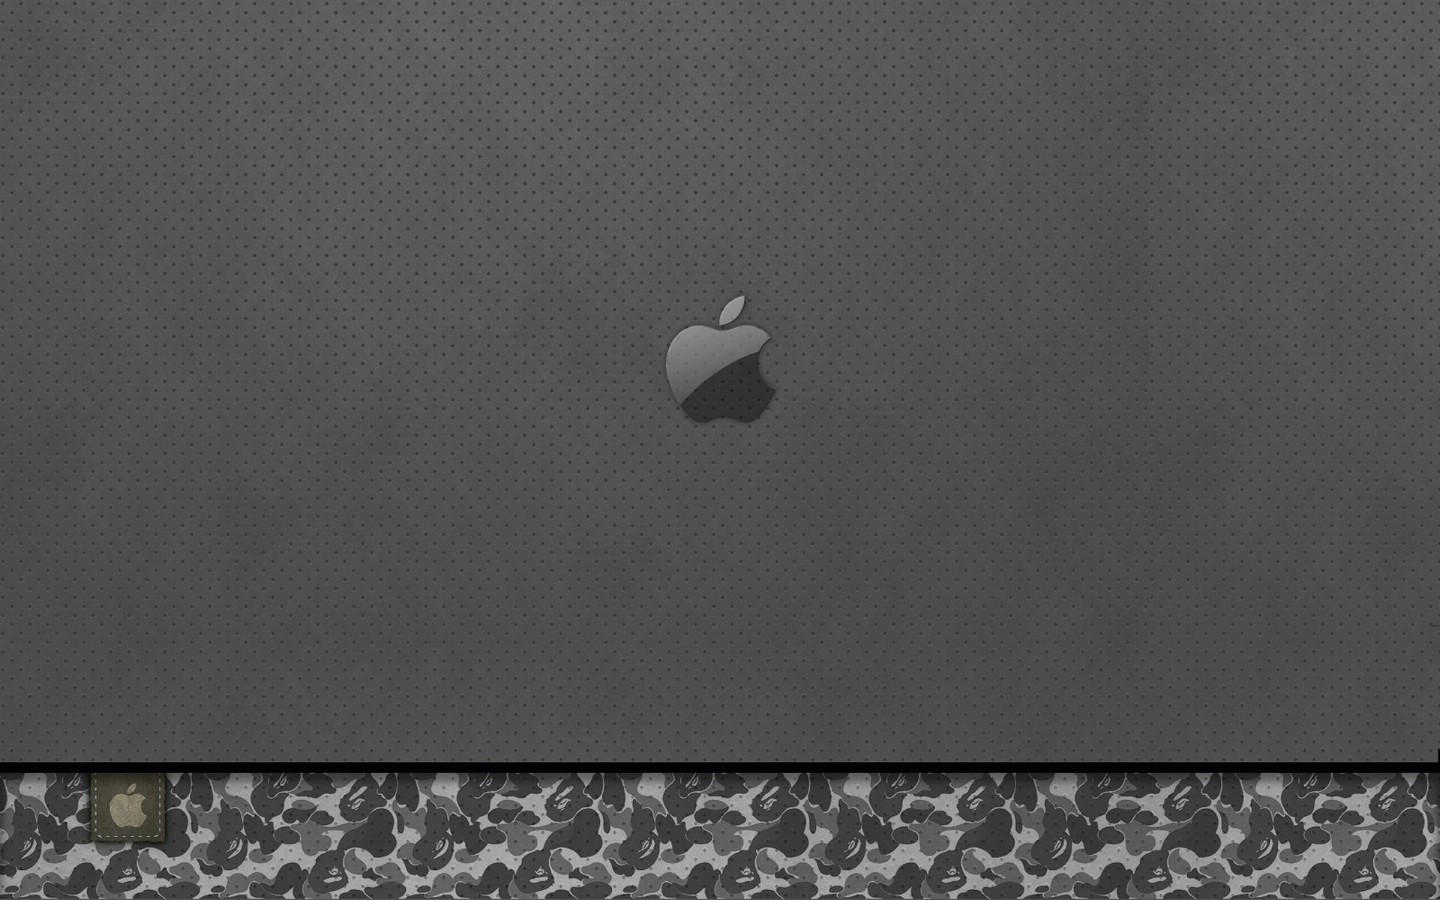 壁纸1440x900Apple主题 42 3壁纸 Apple主题壁纸 Apple主题图片 Apple主题素材 系统壁纸 系统图库 系统图片素材桌面壁纸